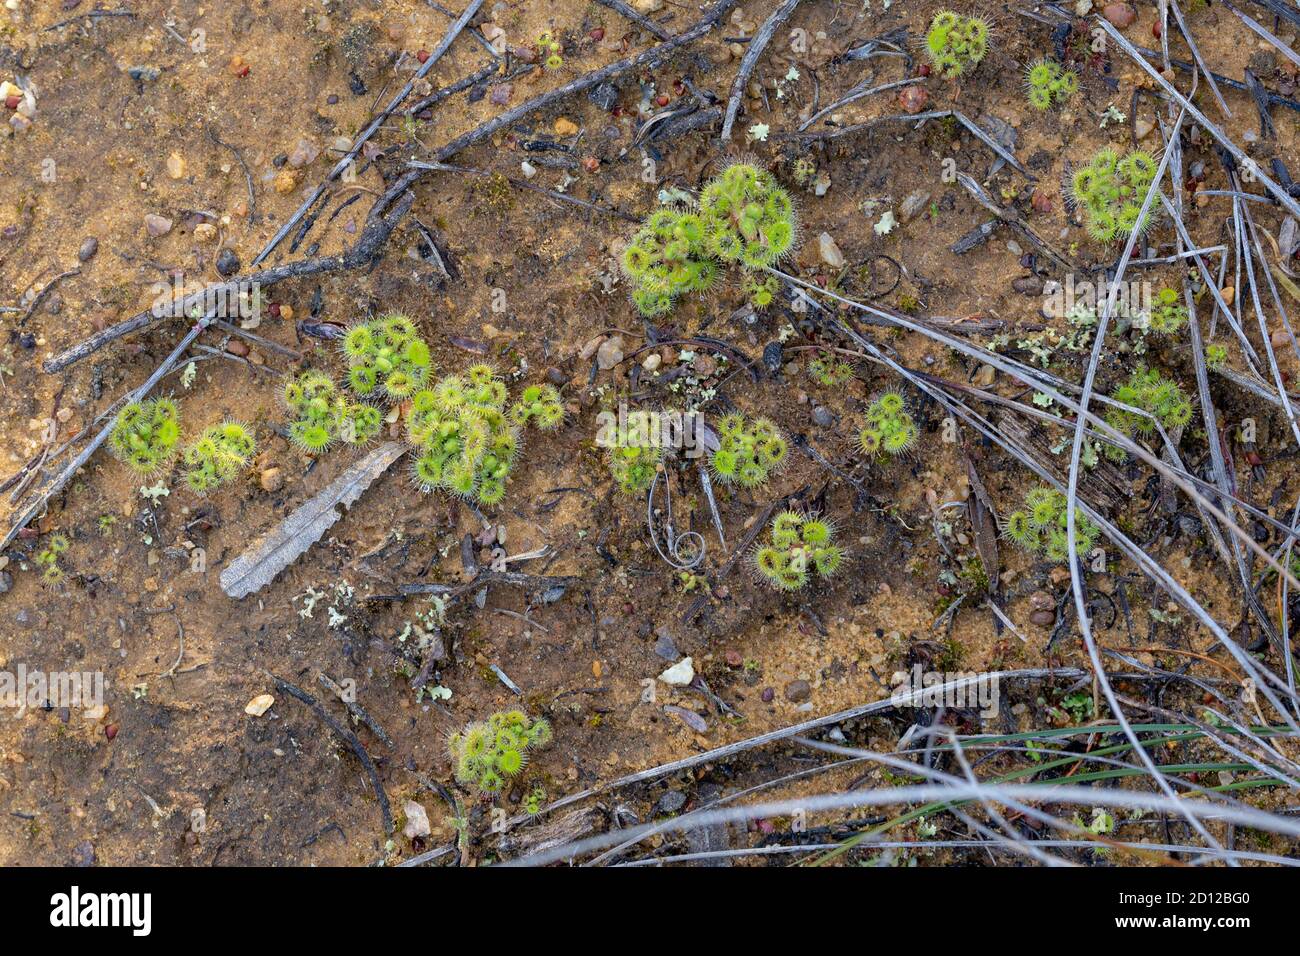 Drosera glanduligera close to Chittering, Western Australia Stock Photo